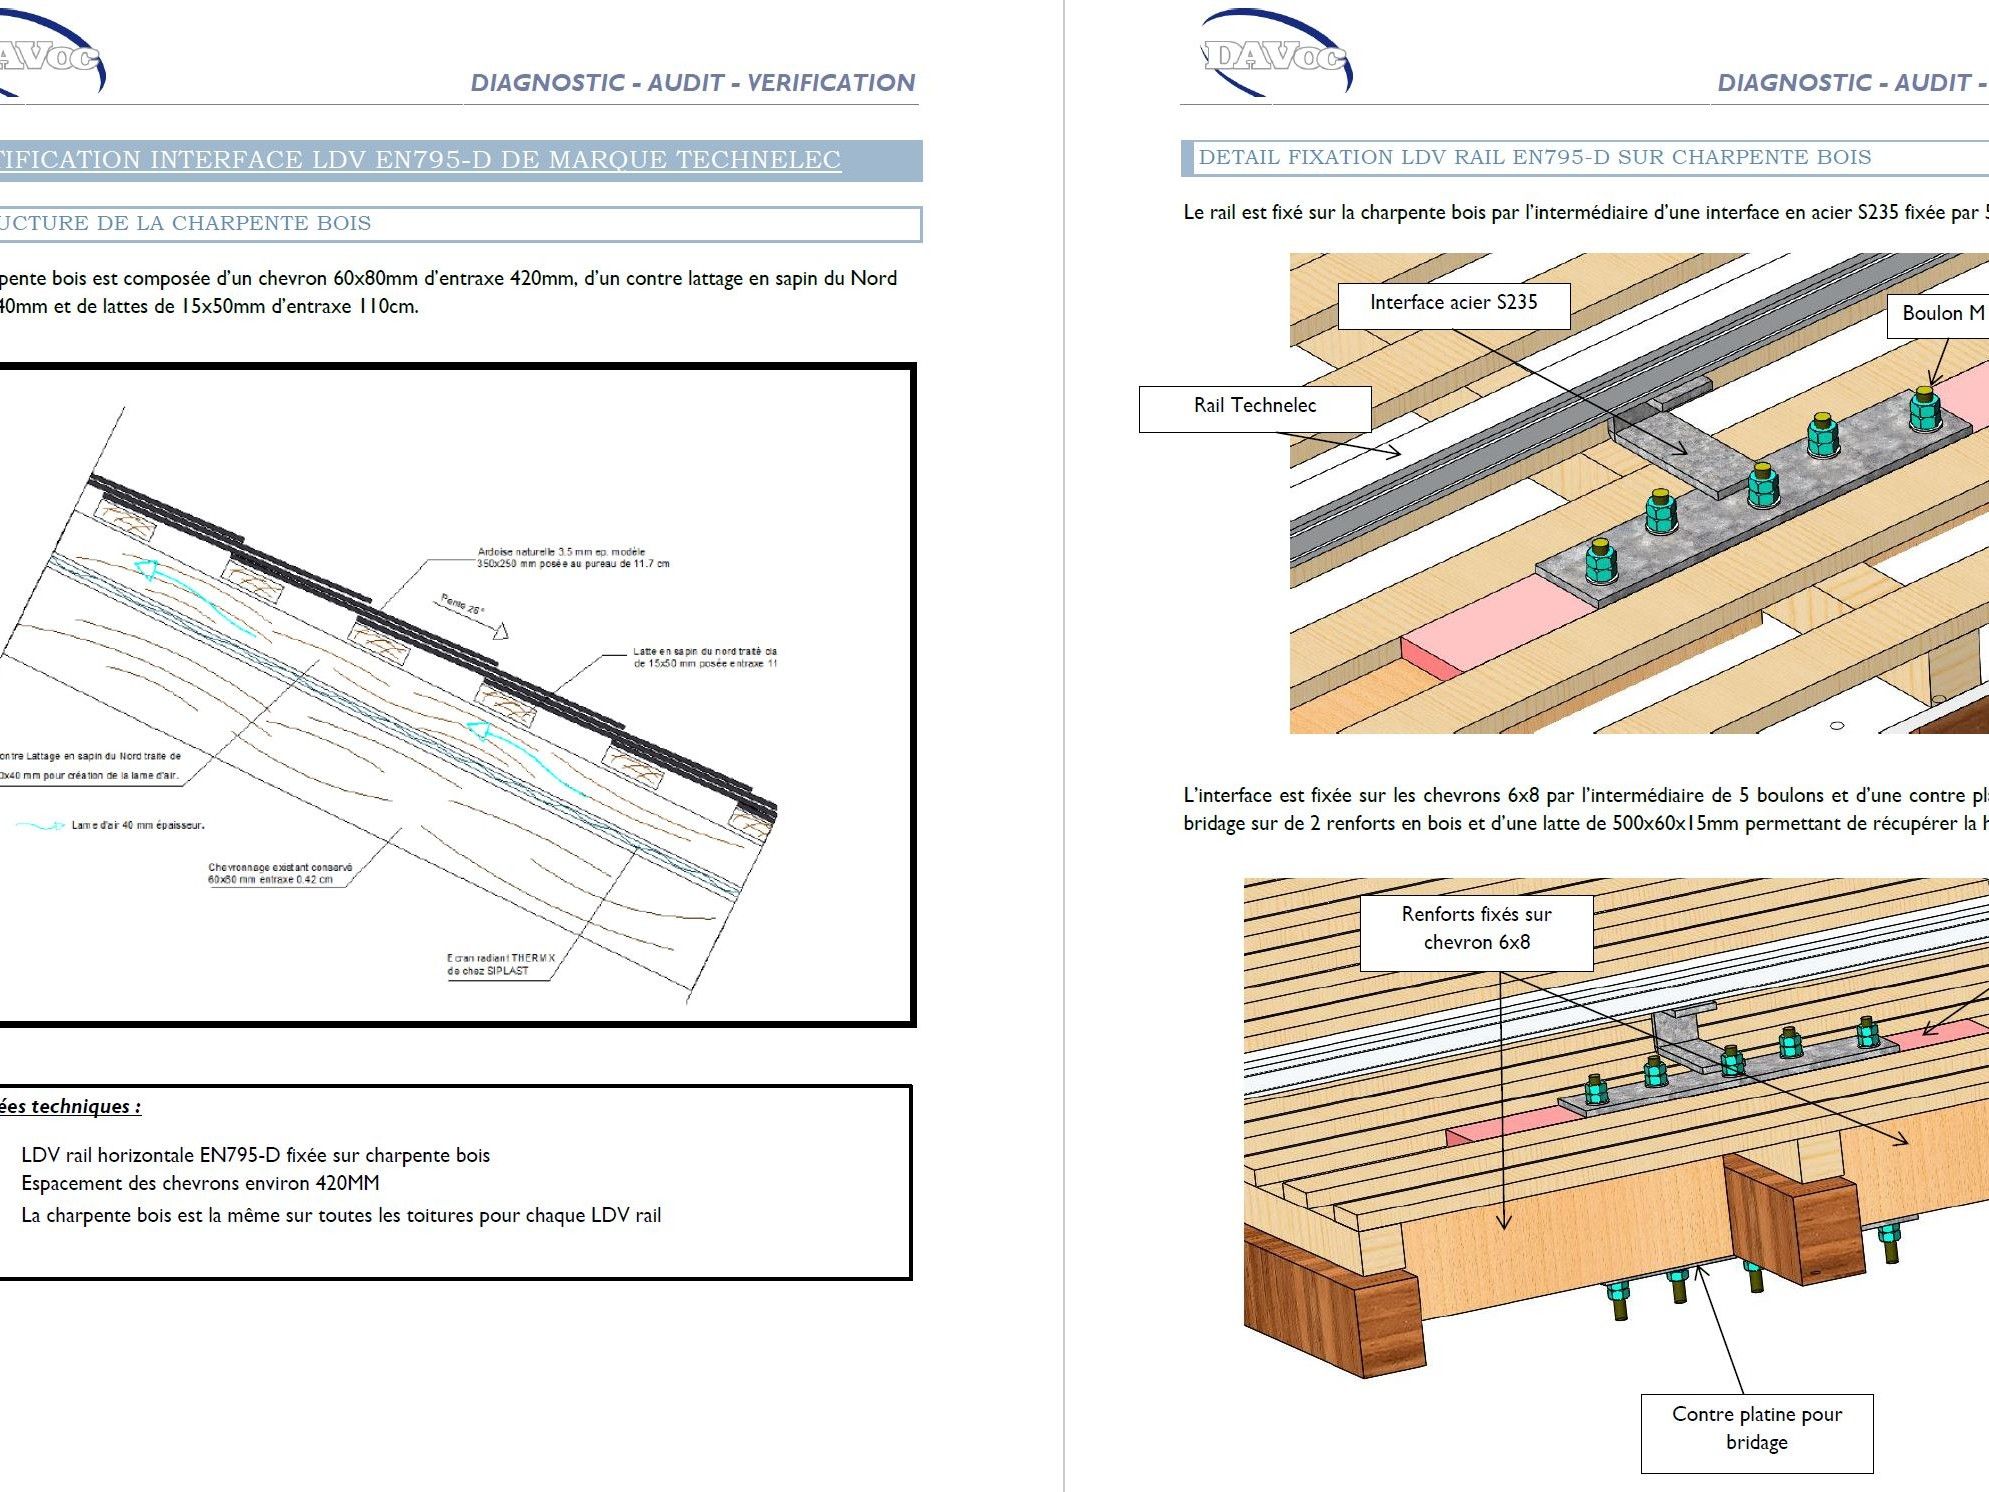 Modélisation de la solution technique de ligne de vie antichute rail sur la charpente bois.